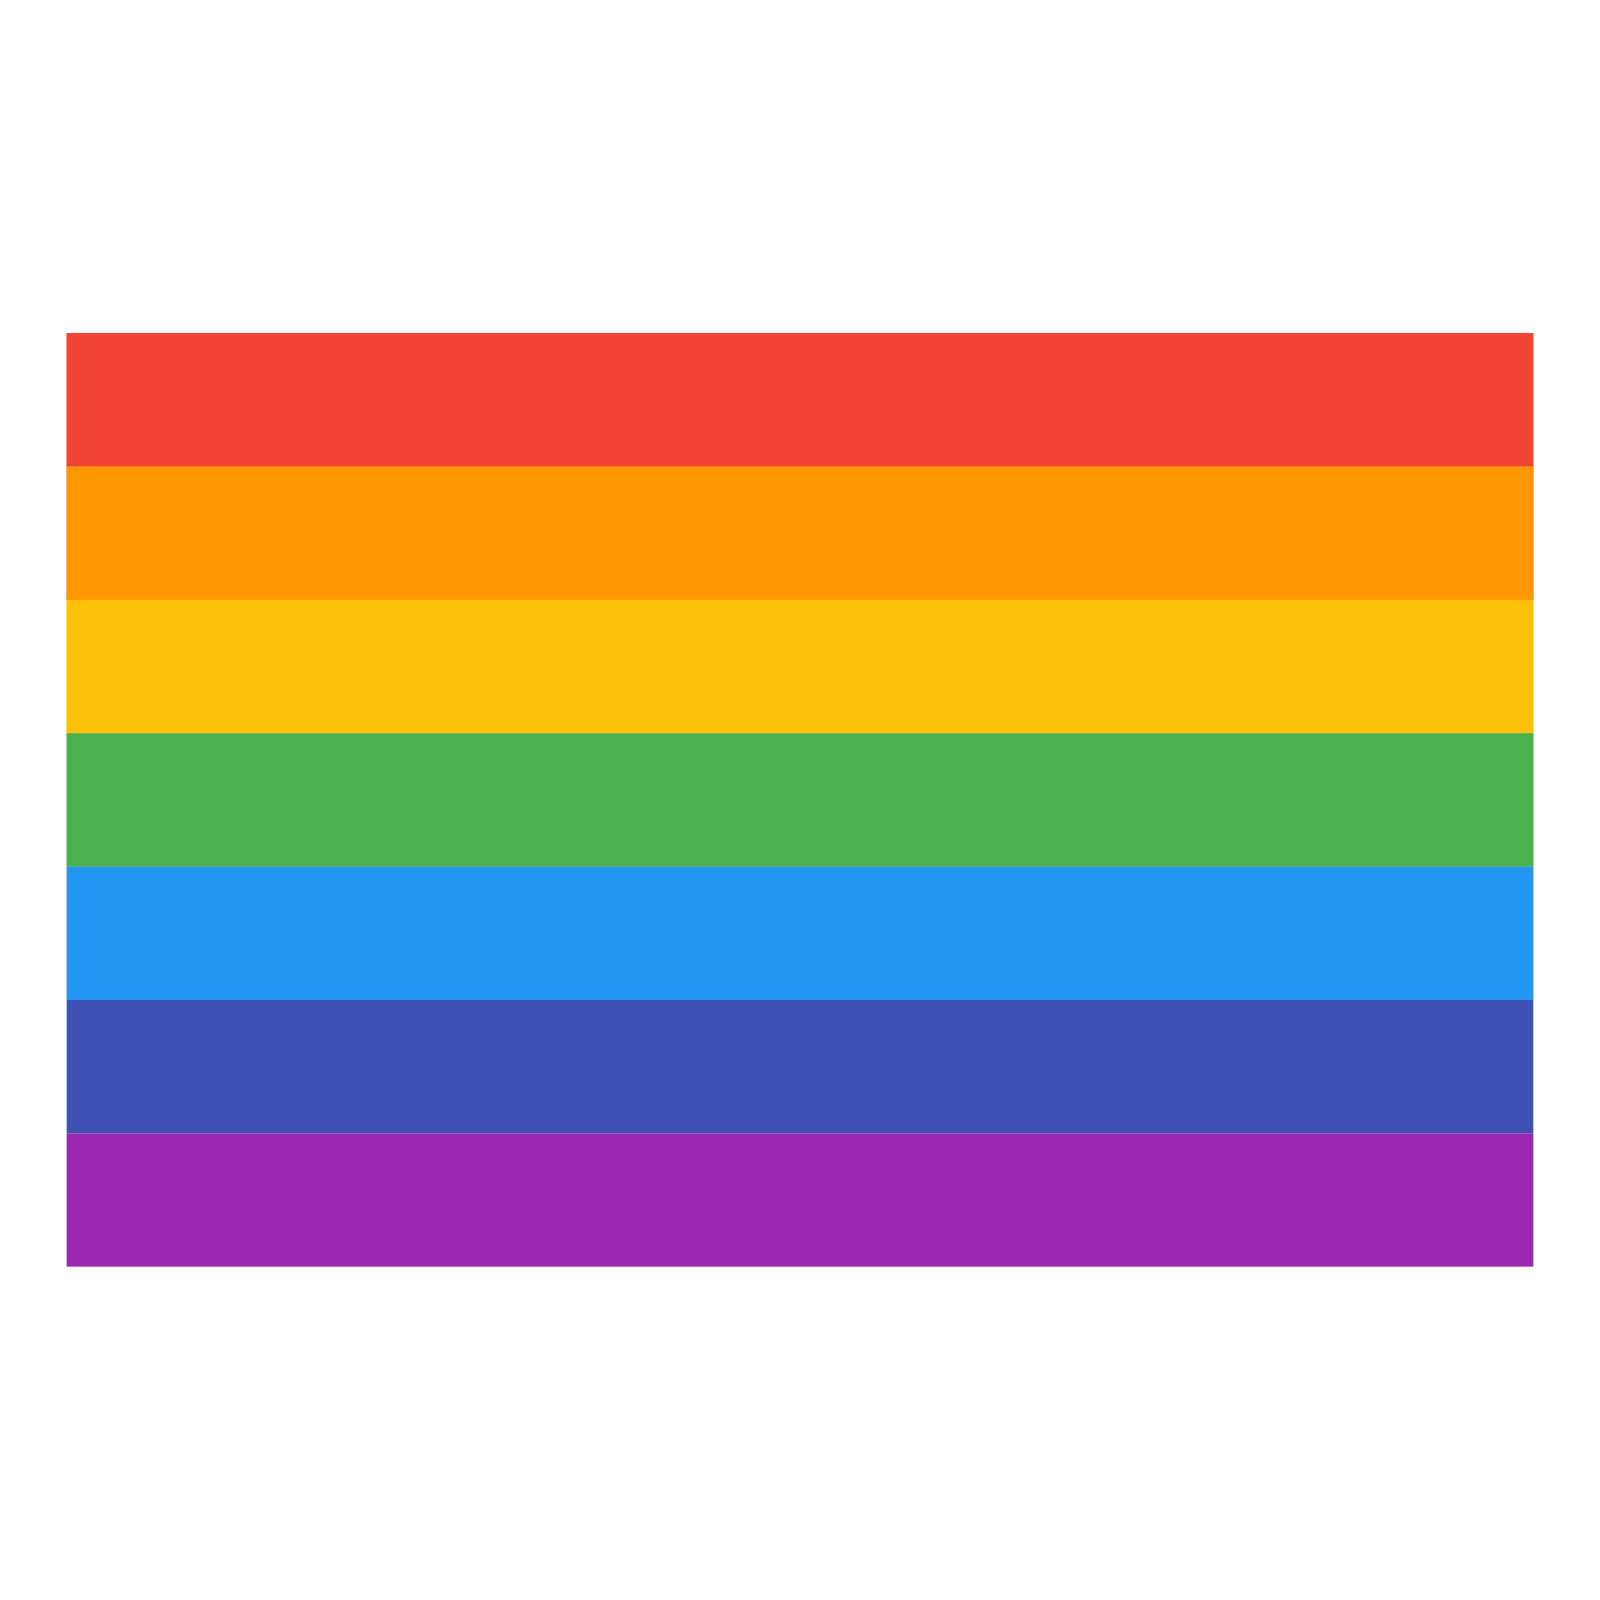 ธง LGBT